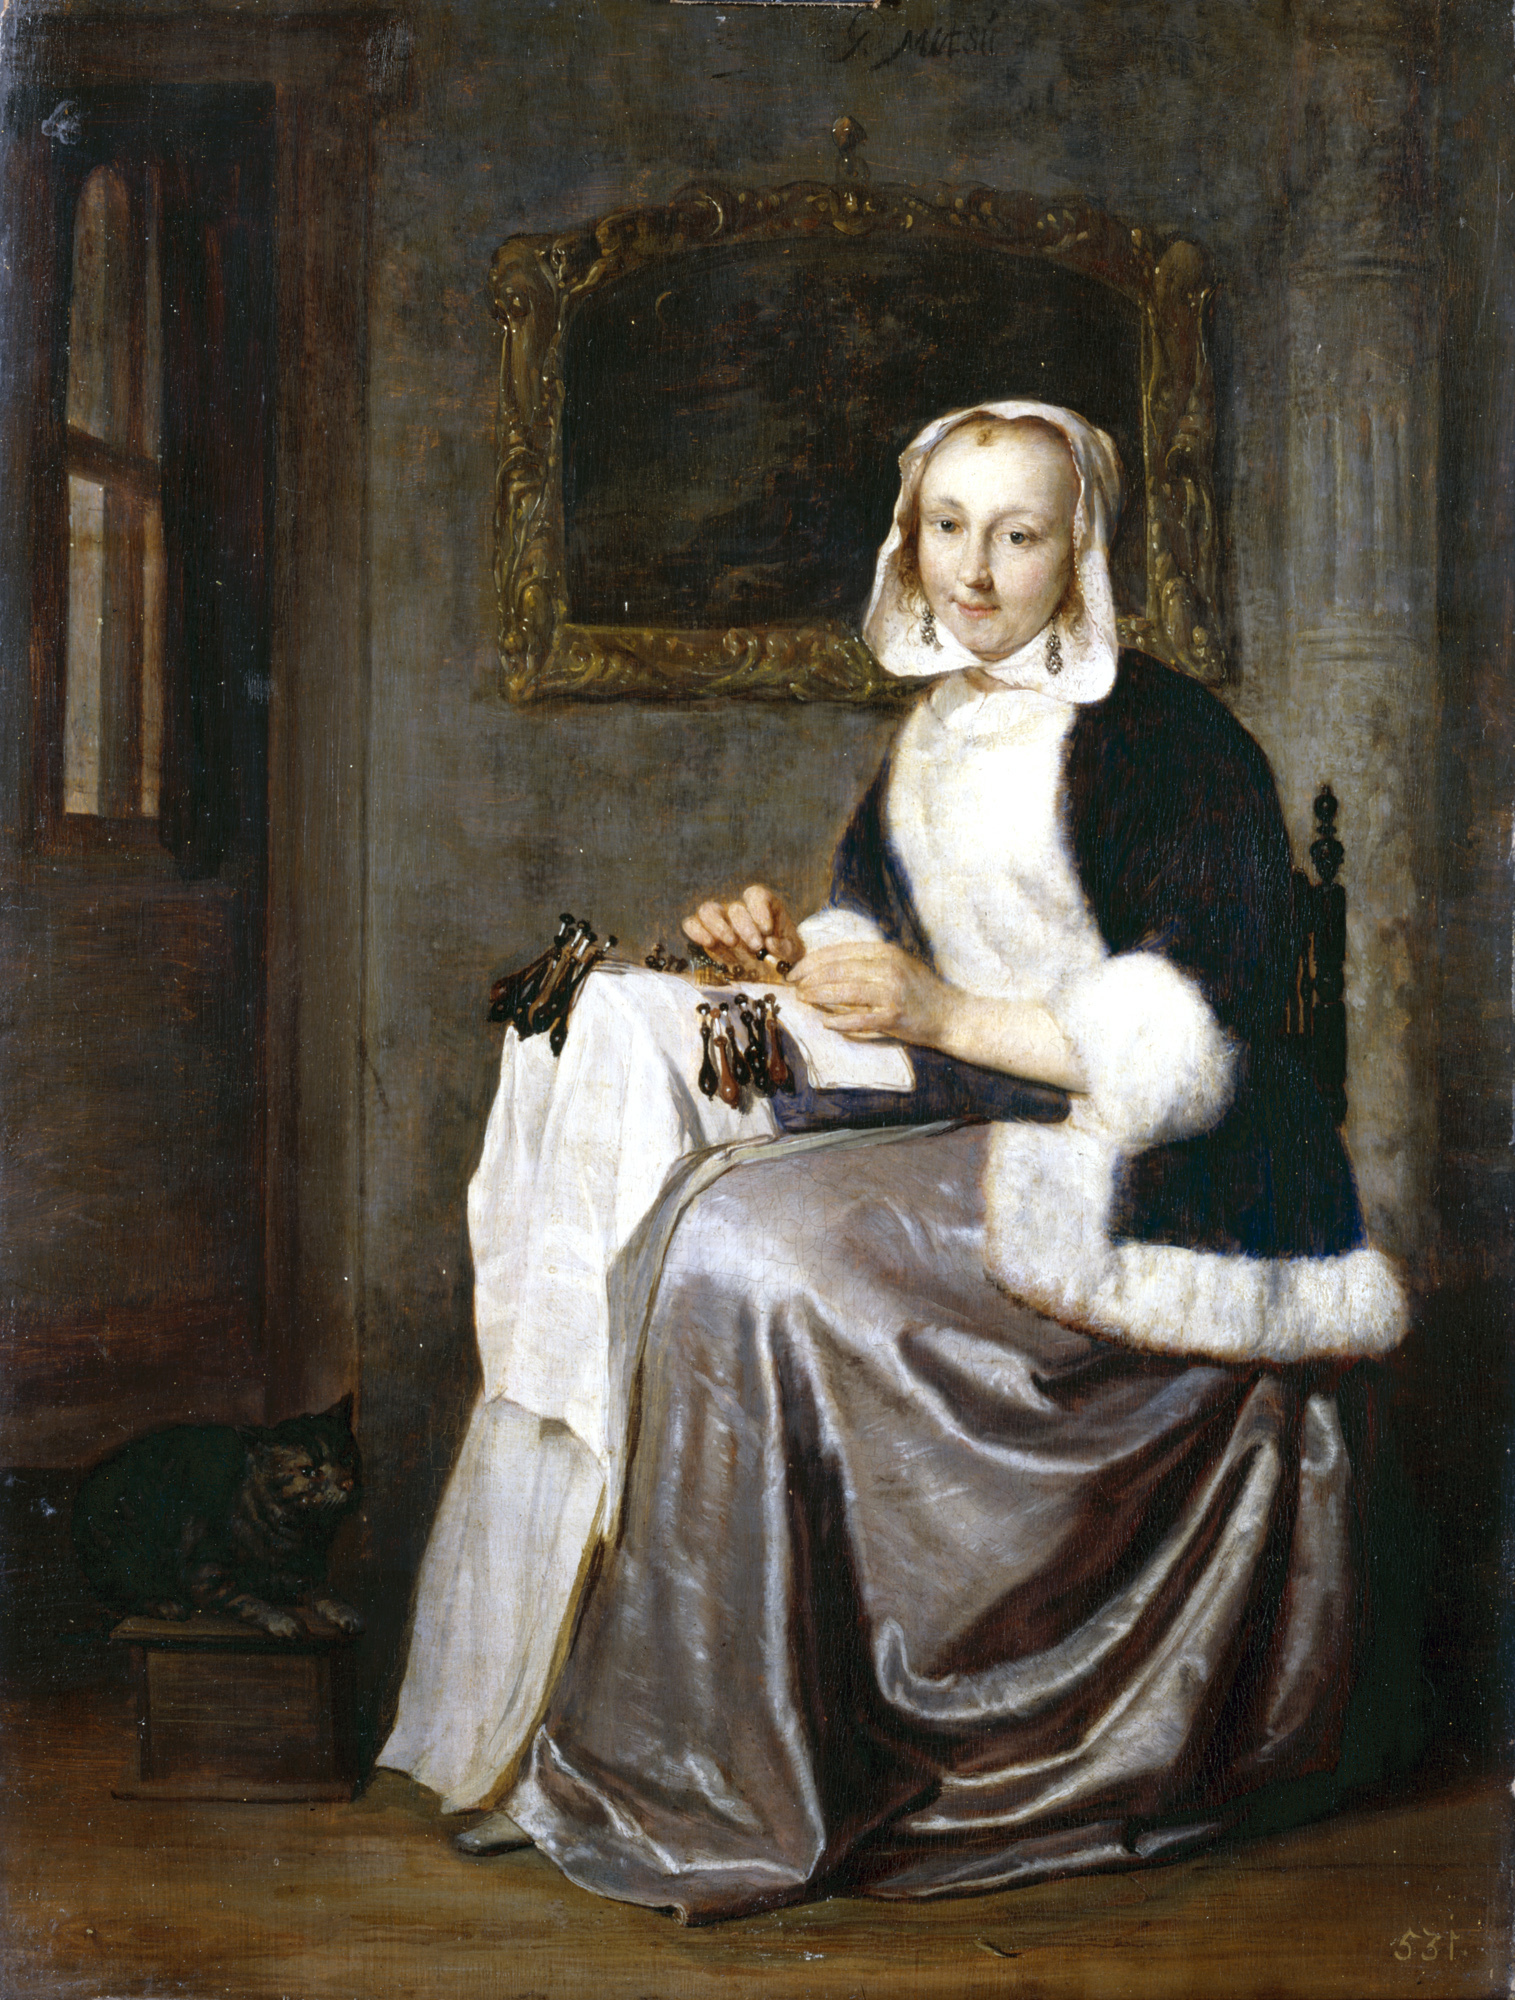 ハブリエル・メツー「レースを編む女」1661-64年頃 ドレスデン国立古典絵画館